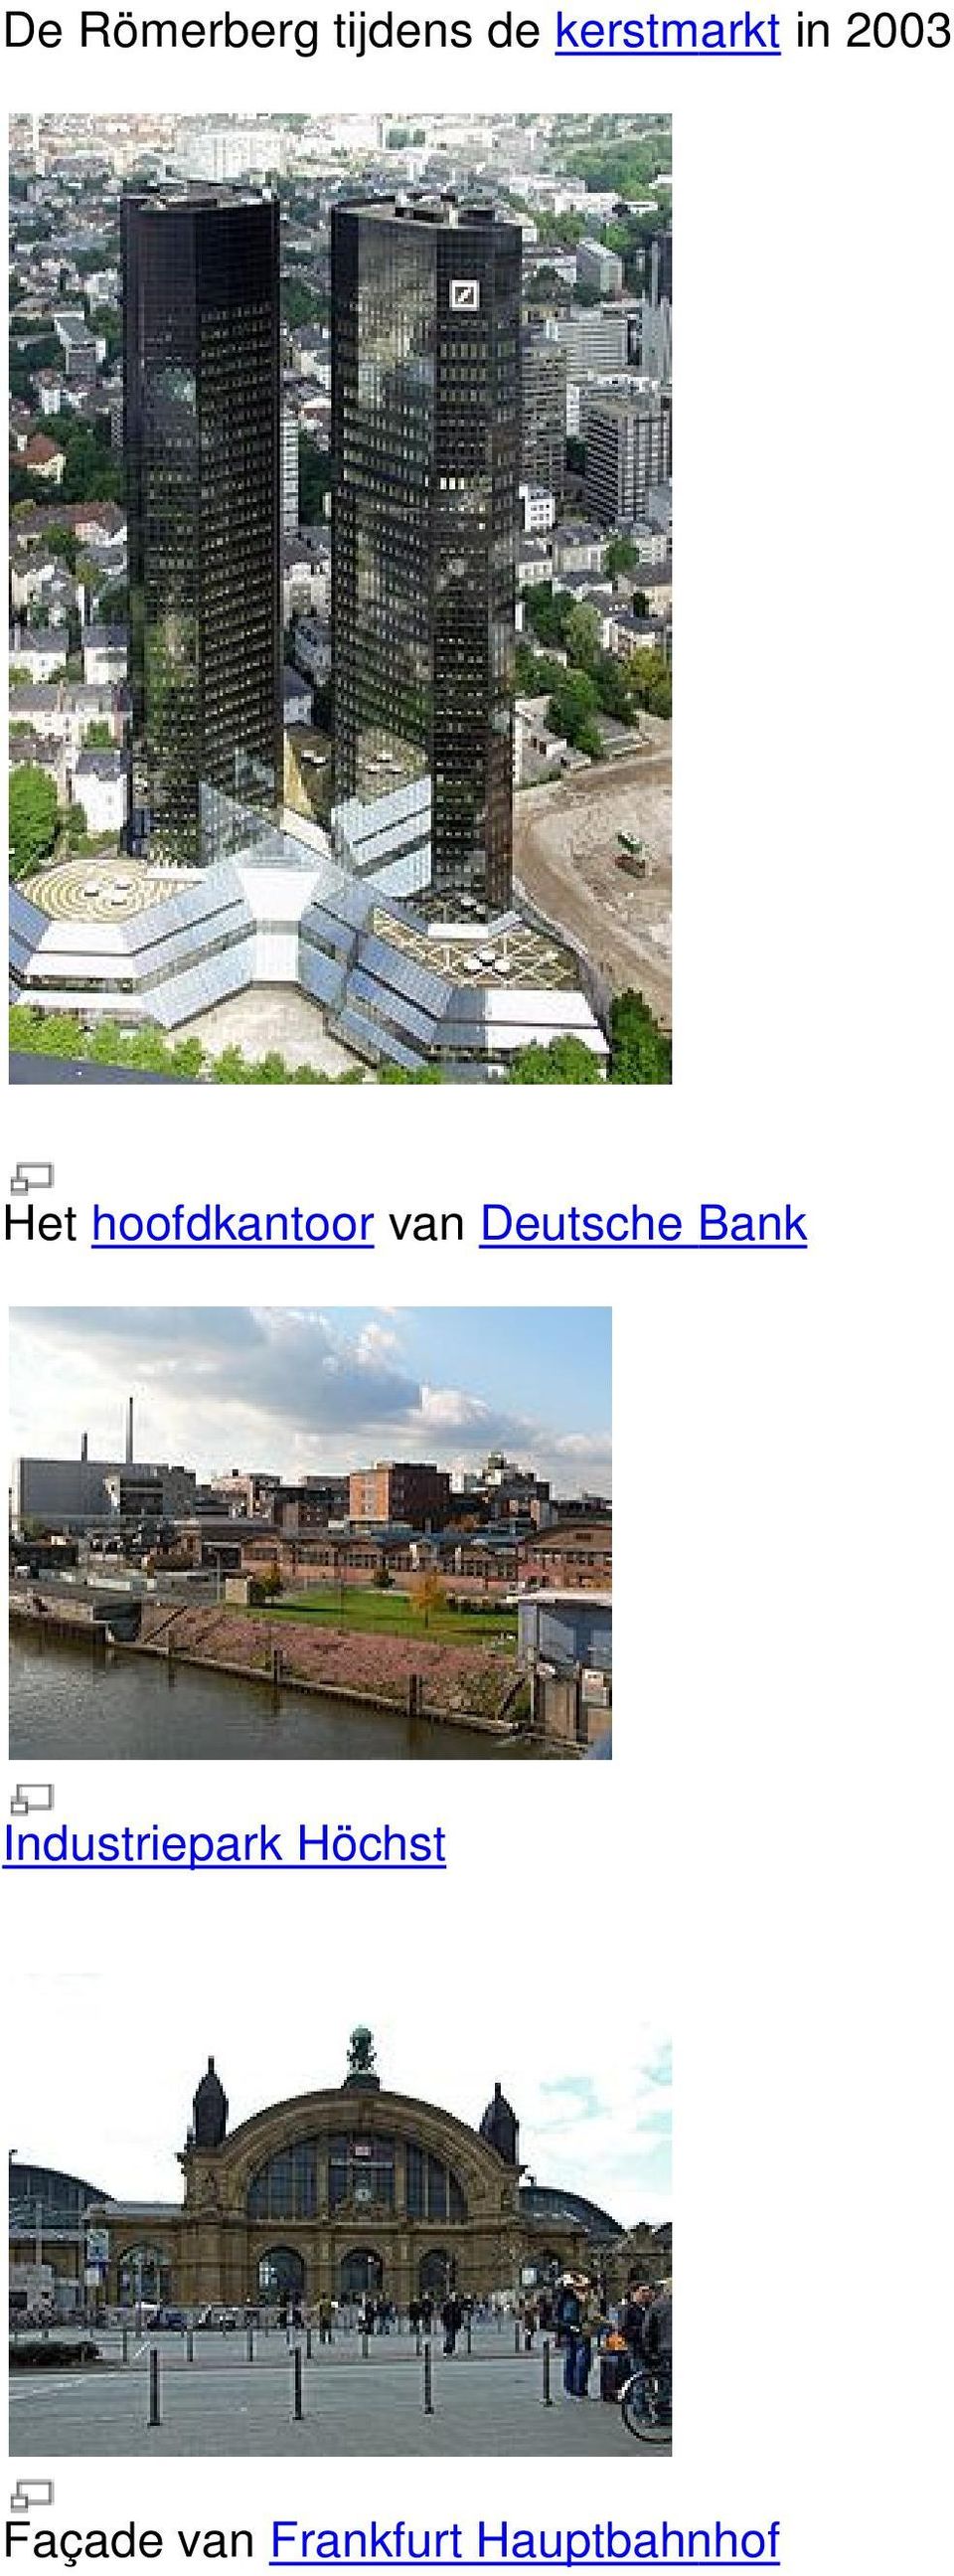 hoofdkantoor van Deutsche Bank